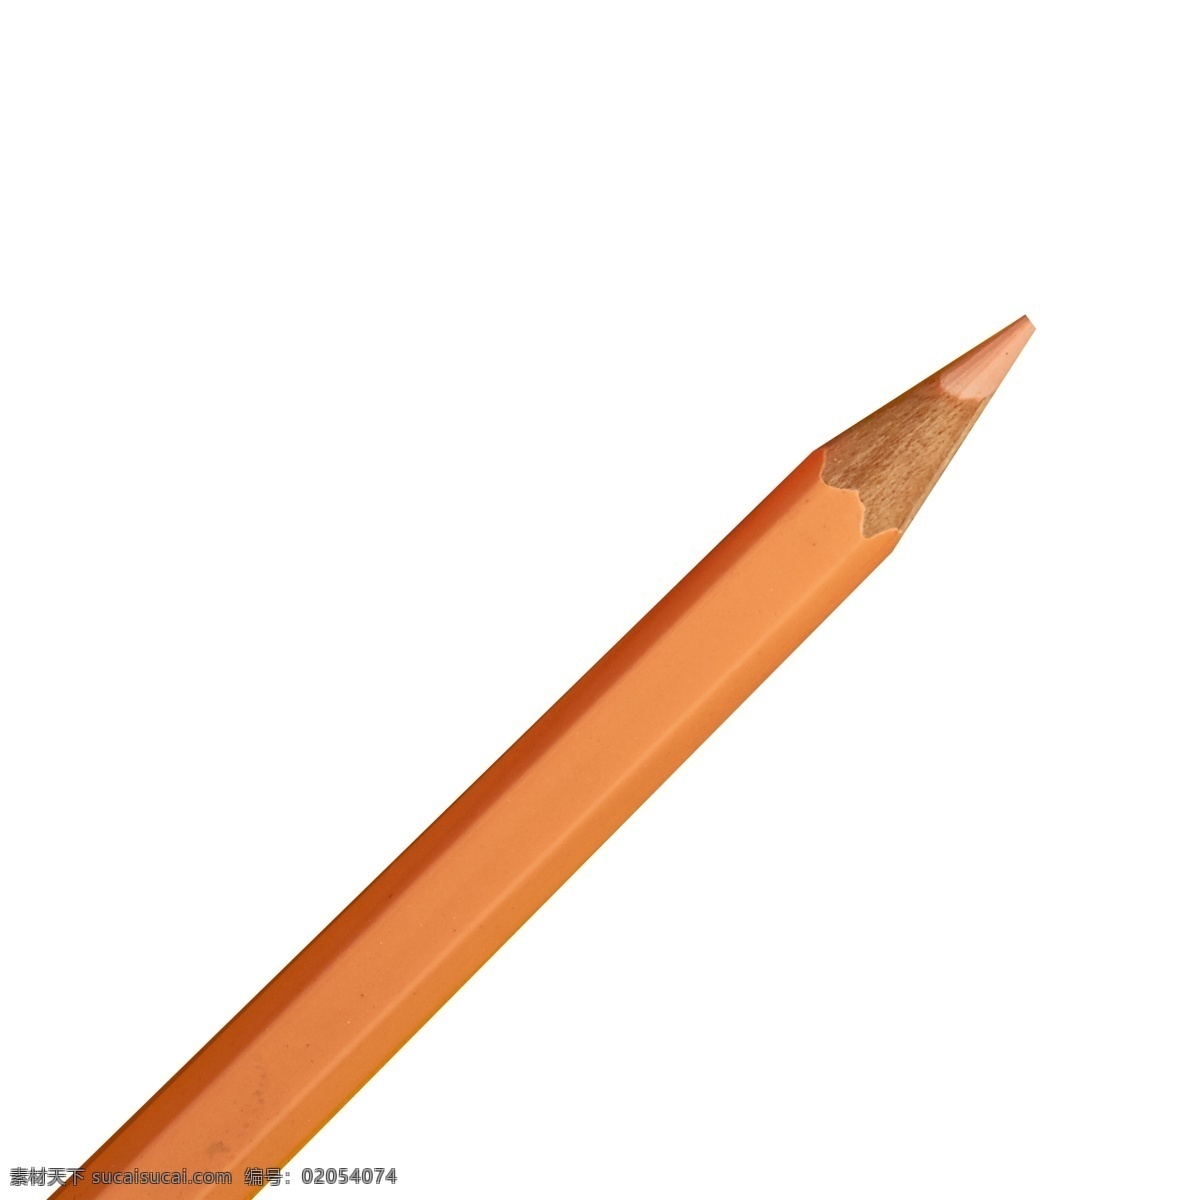 彩色画笔 铅笔 水彩笔 画笔 实物 实物免扣 实物下载